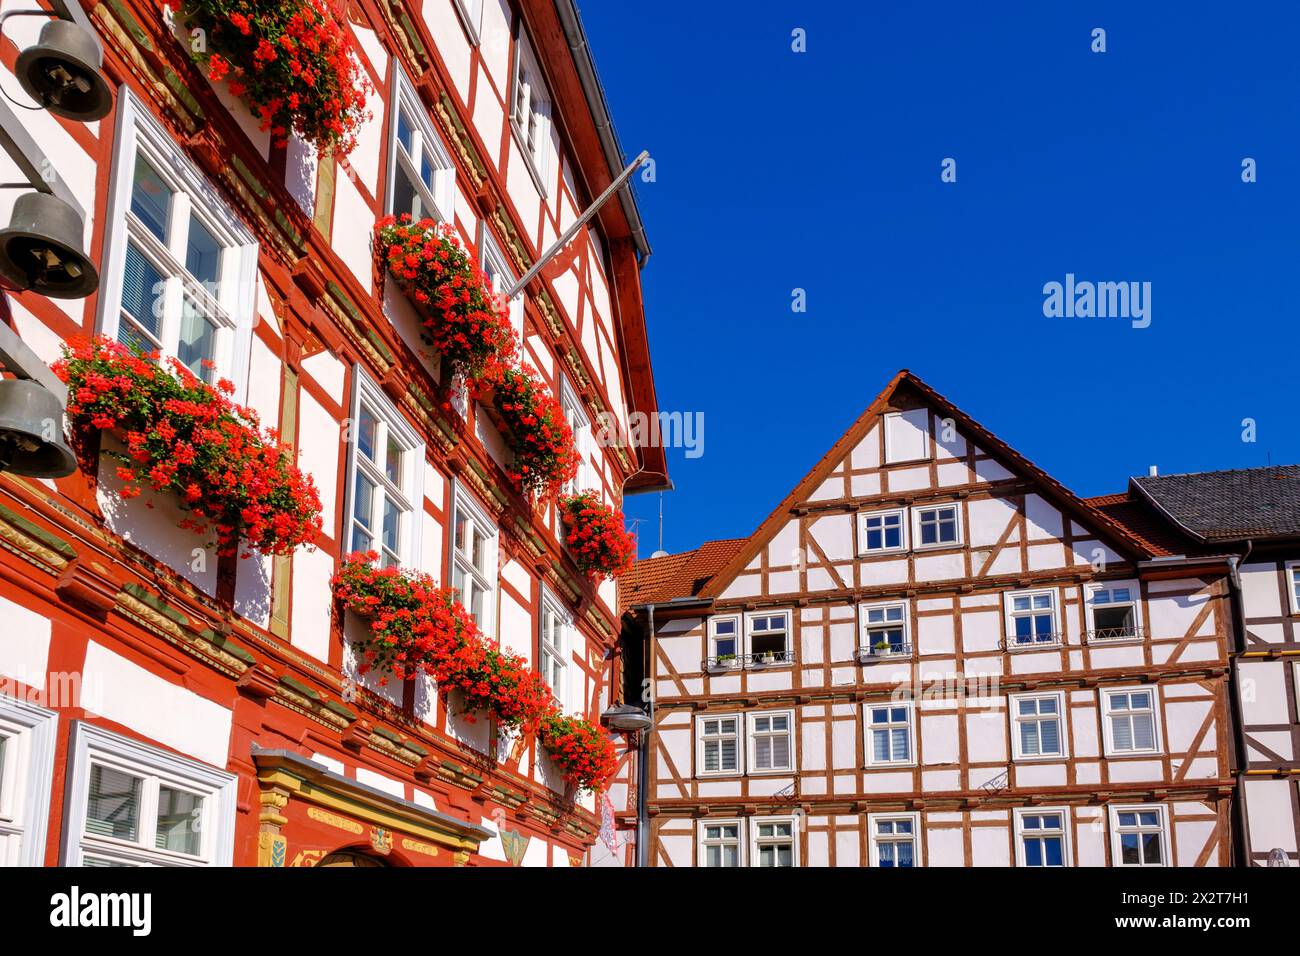 Allemagne, Hesse, Eschwege, maisons historiques à colombages Banque D'Images